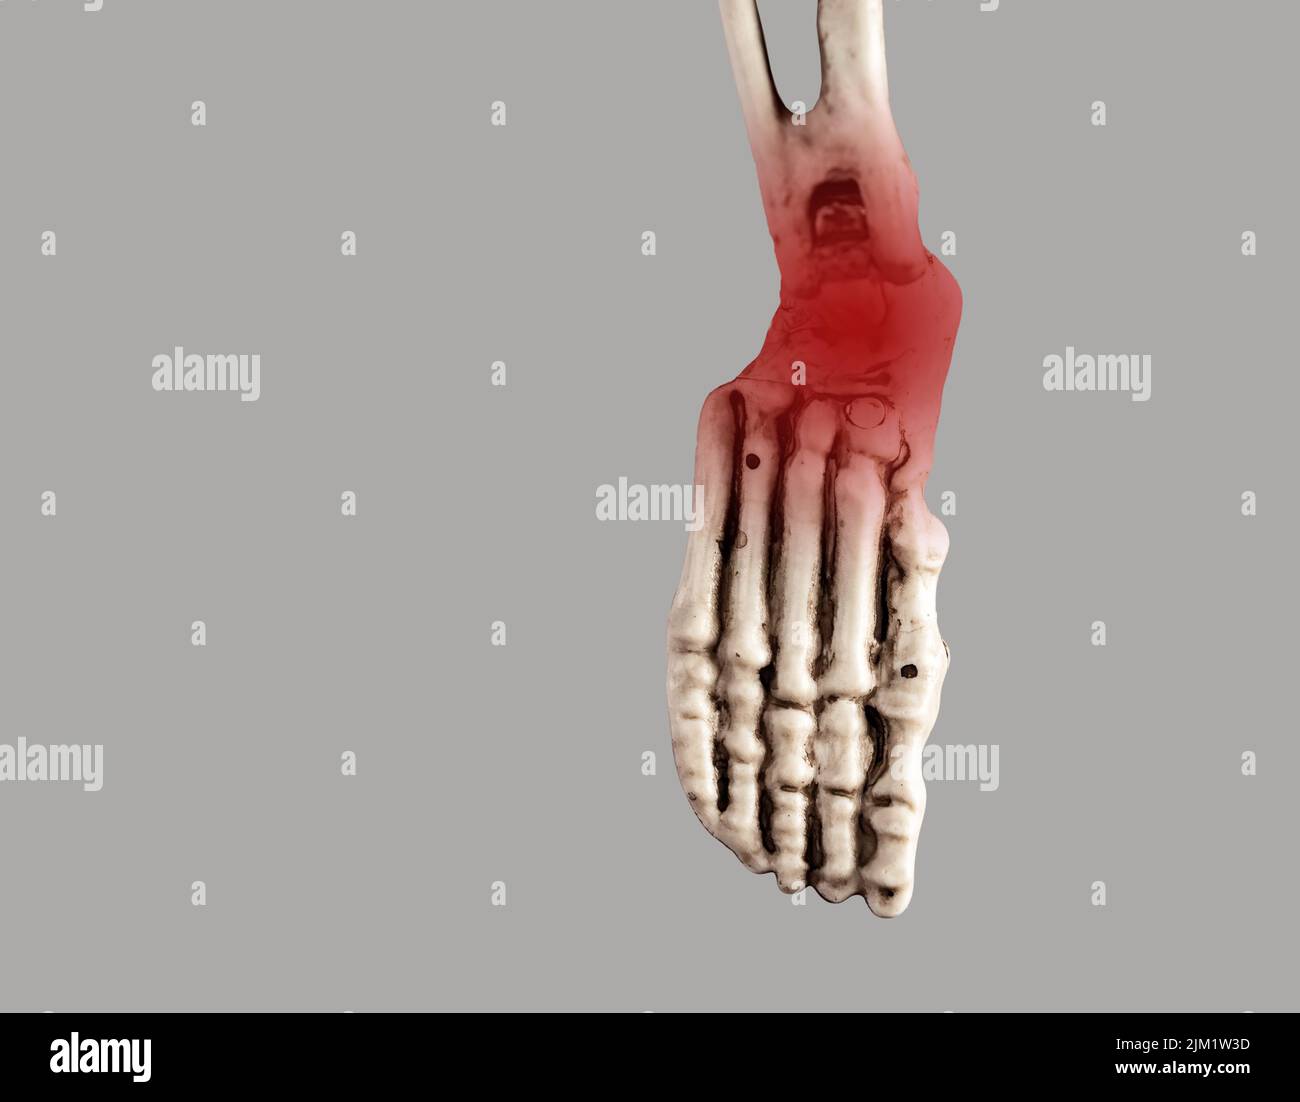 Menschlicher Skelettfuß mit roter Spitze an Ferse und Knöchel. Verletzungen, plantare Fasziitis, Sehnenentzündung Folgen. Medizinische Bedingungen, Anatomiekonzept. Hochwertige Fotos Stockfoto